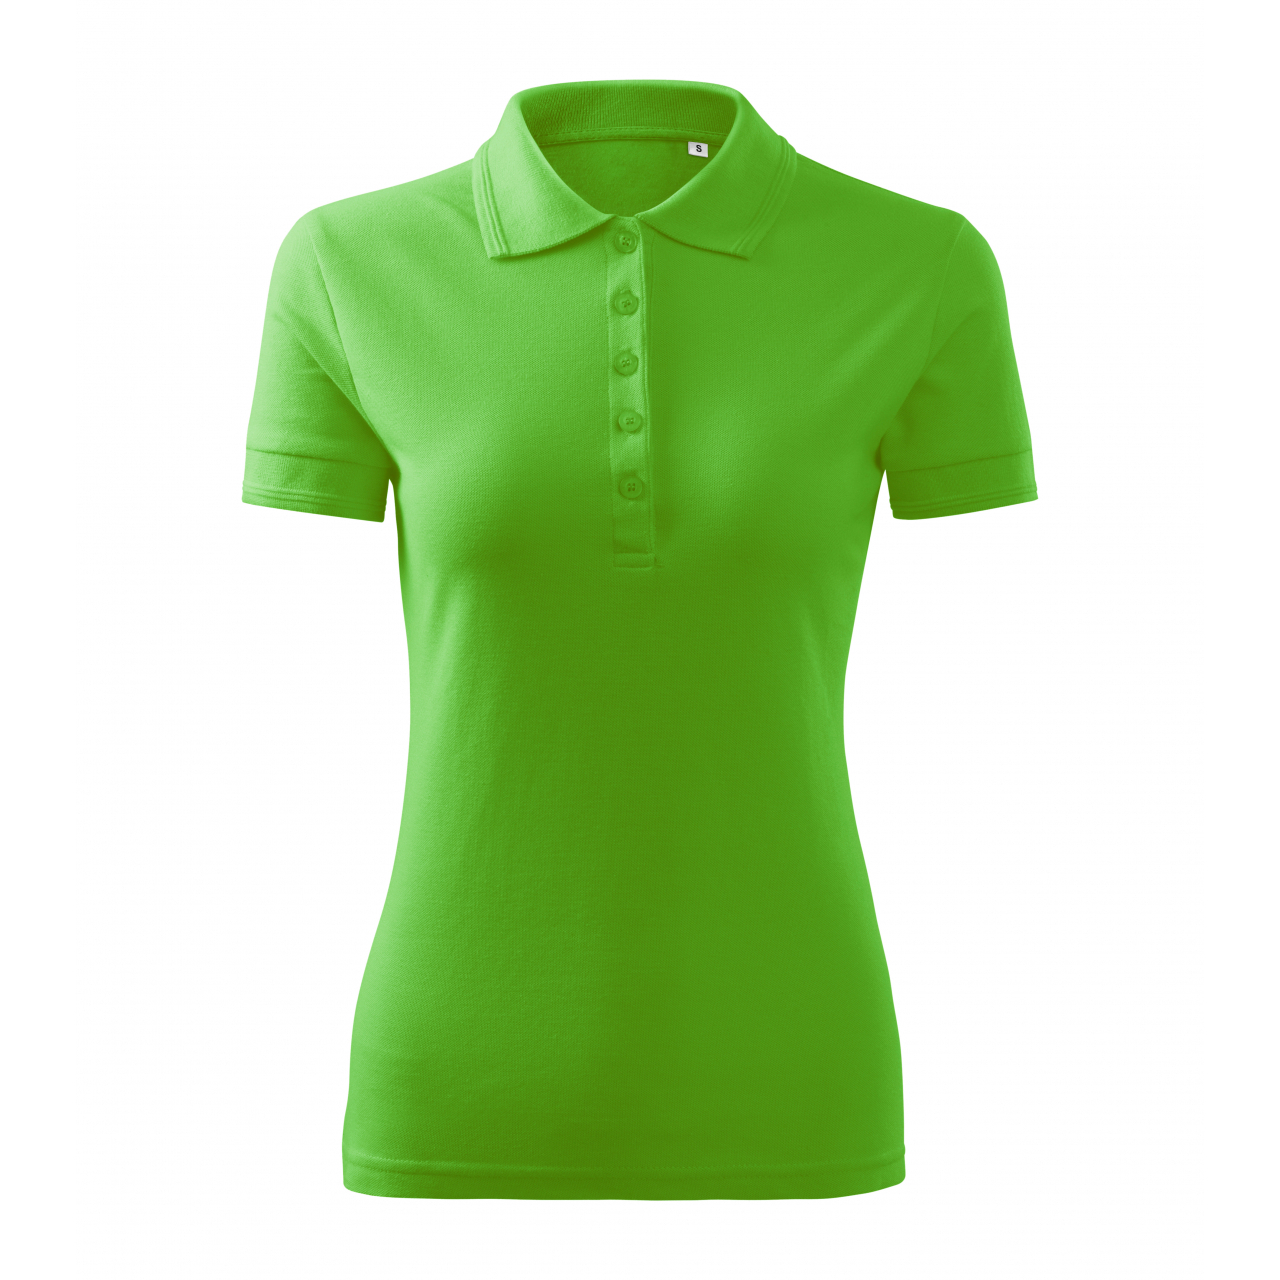 Polokošile dámská Malfini Pique Polo Free - středně zelená, XL